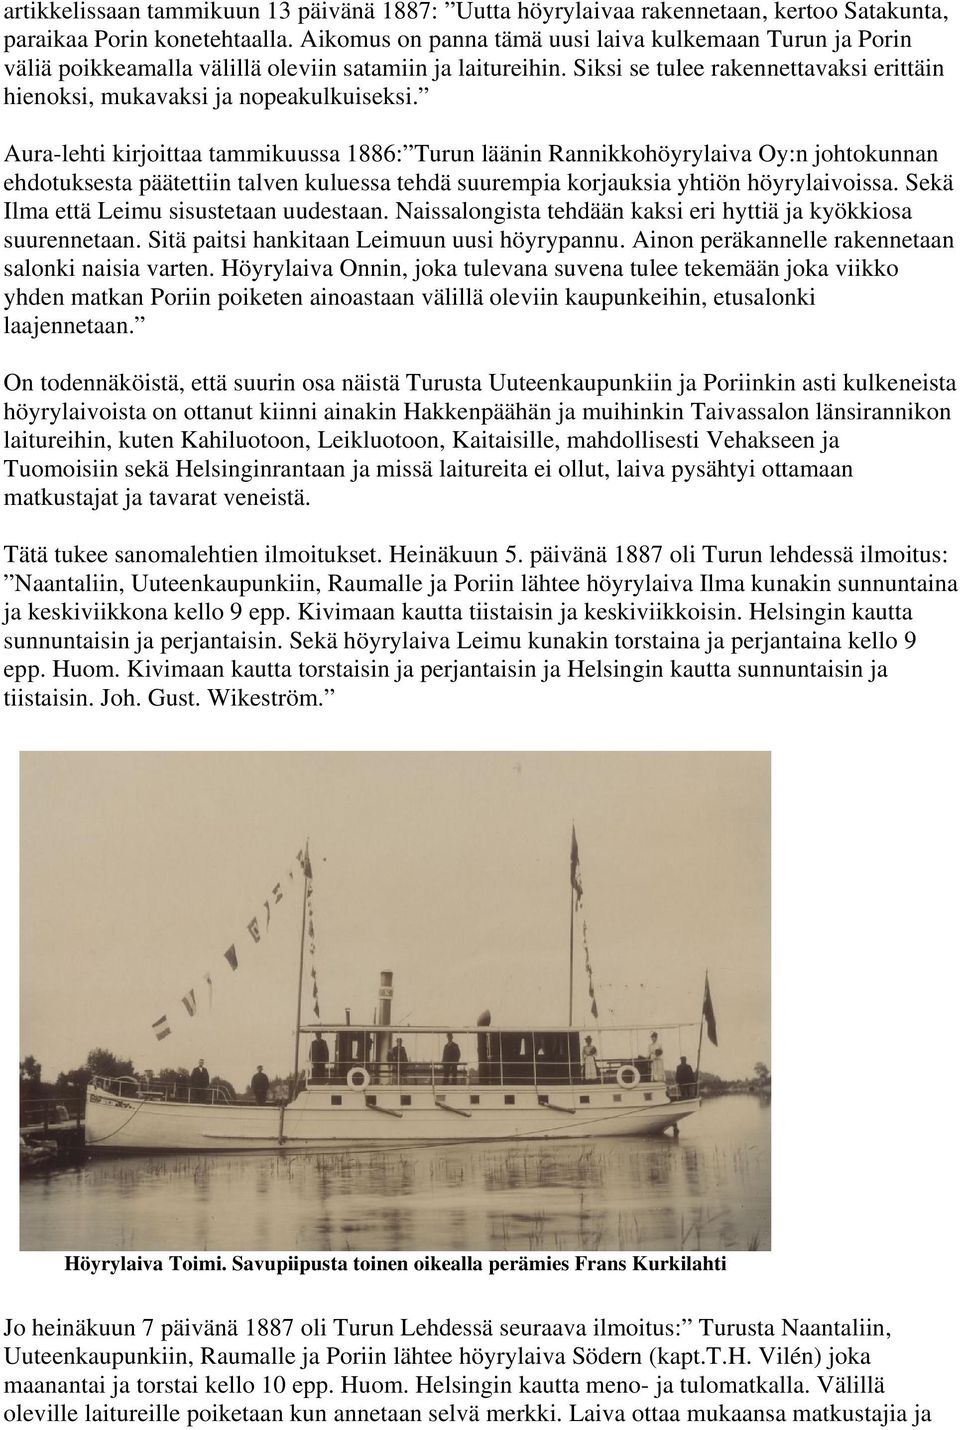 Aura-lehti kirjoittaa tammikuussa 1886: Turun läänin Rannikkohöyrylaiva Oy:n johtokunnan ehdotuksesta päätettiin talven kuluessa tehdä suurempia korjauksia yhtiön höyrylaivoissa.